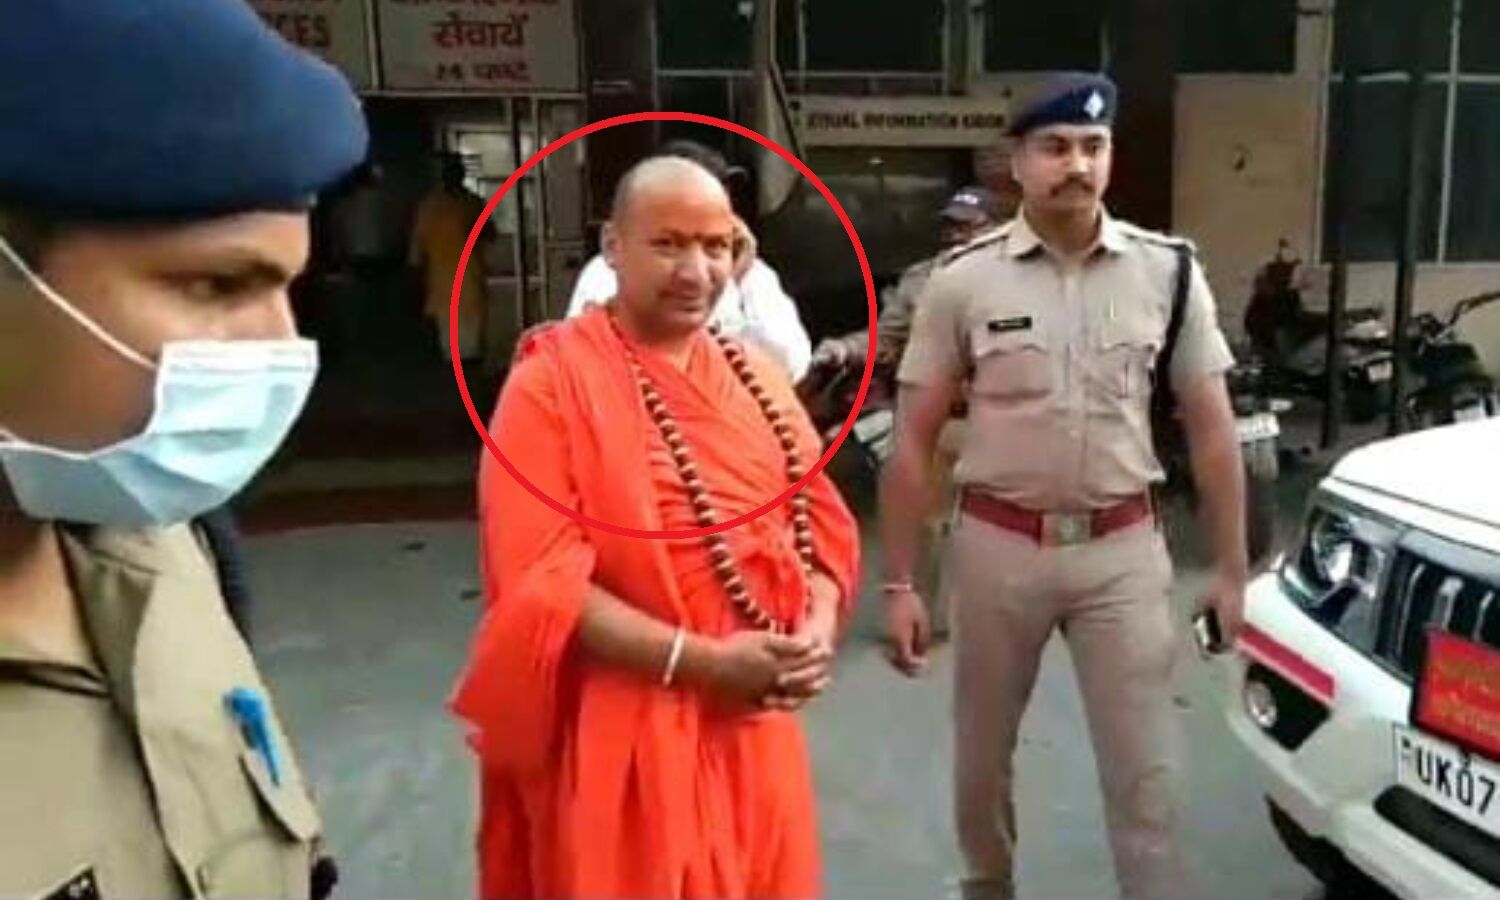 Hate Speech Case : हरिद्वार की धर्मसंसद मामले में तीसरी गिरफ्तारी, कोर्ट ने स्वामी सिंधु सागर महाराज को भी भेजा जेल